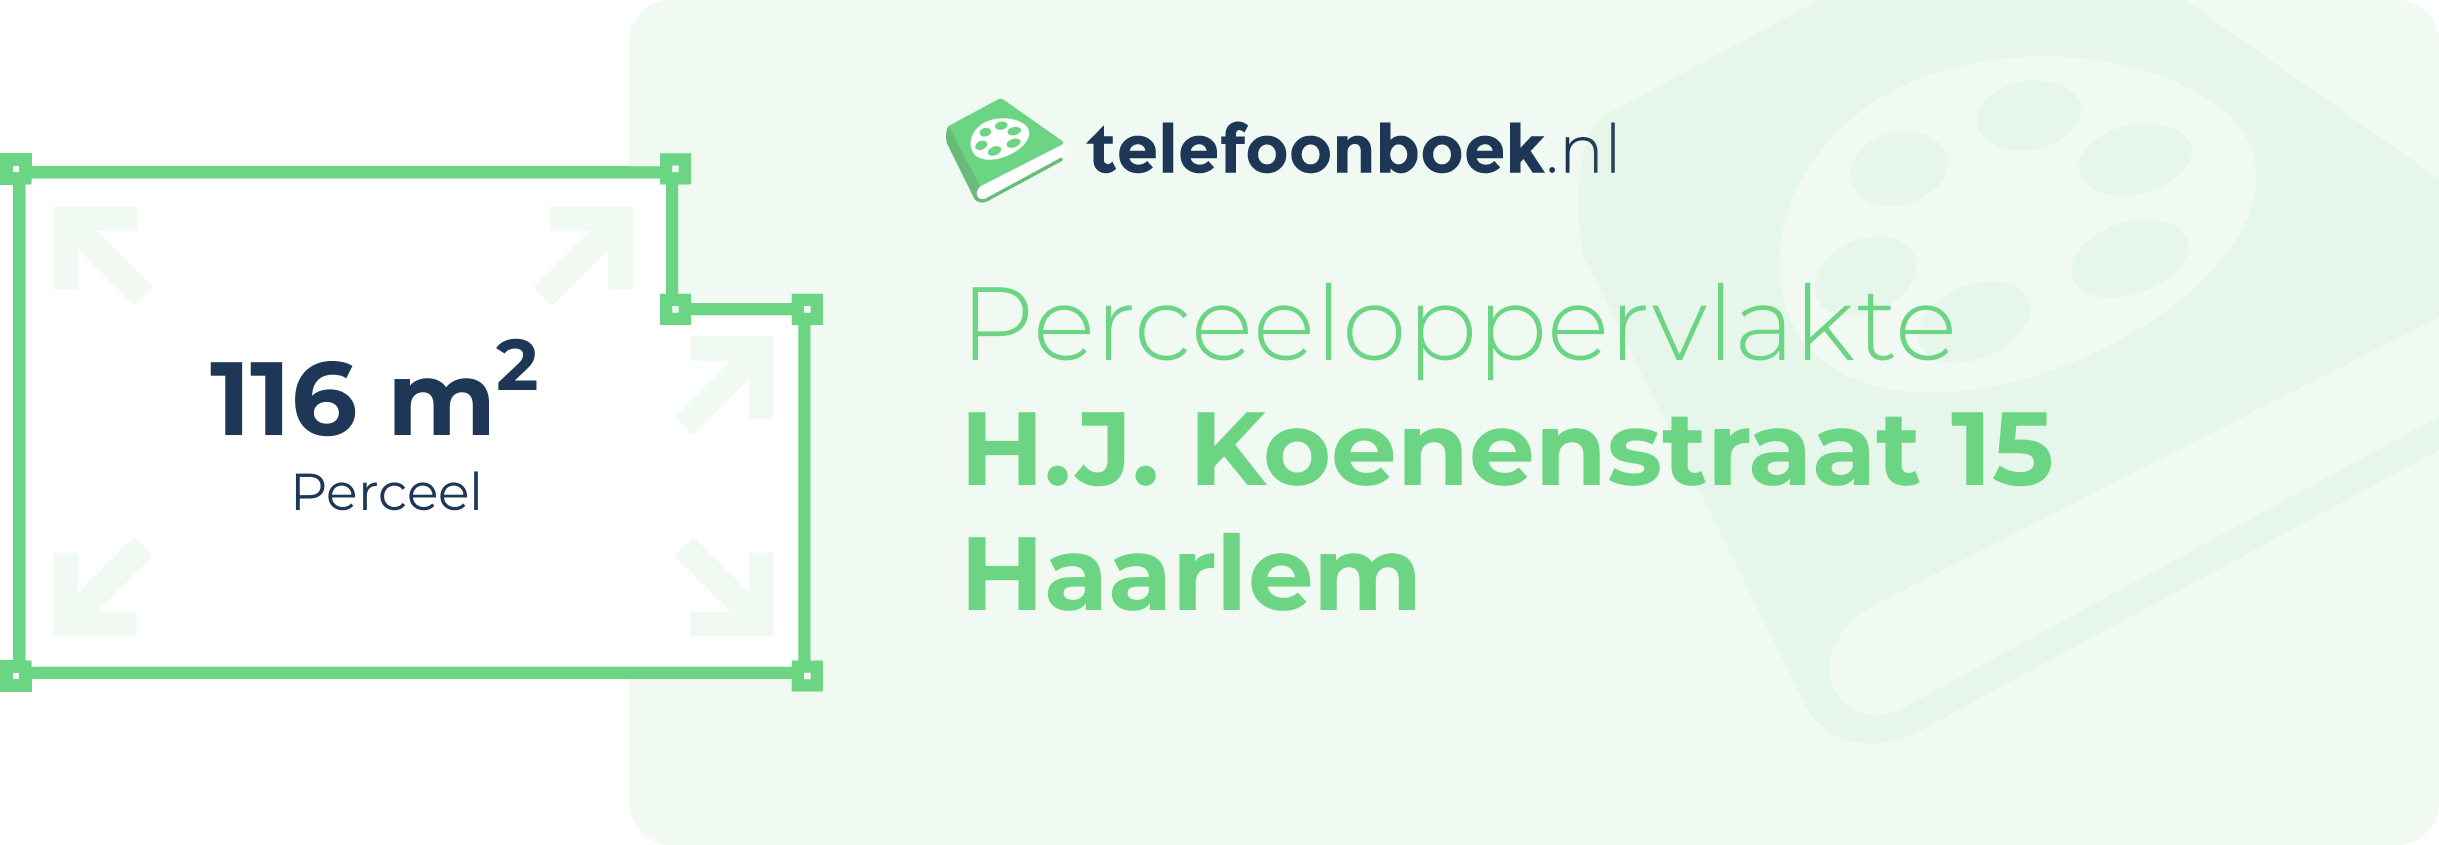 Perceeloppervlakte H.J. Koenenstraat 15 Haarlem